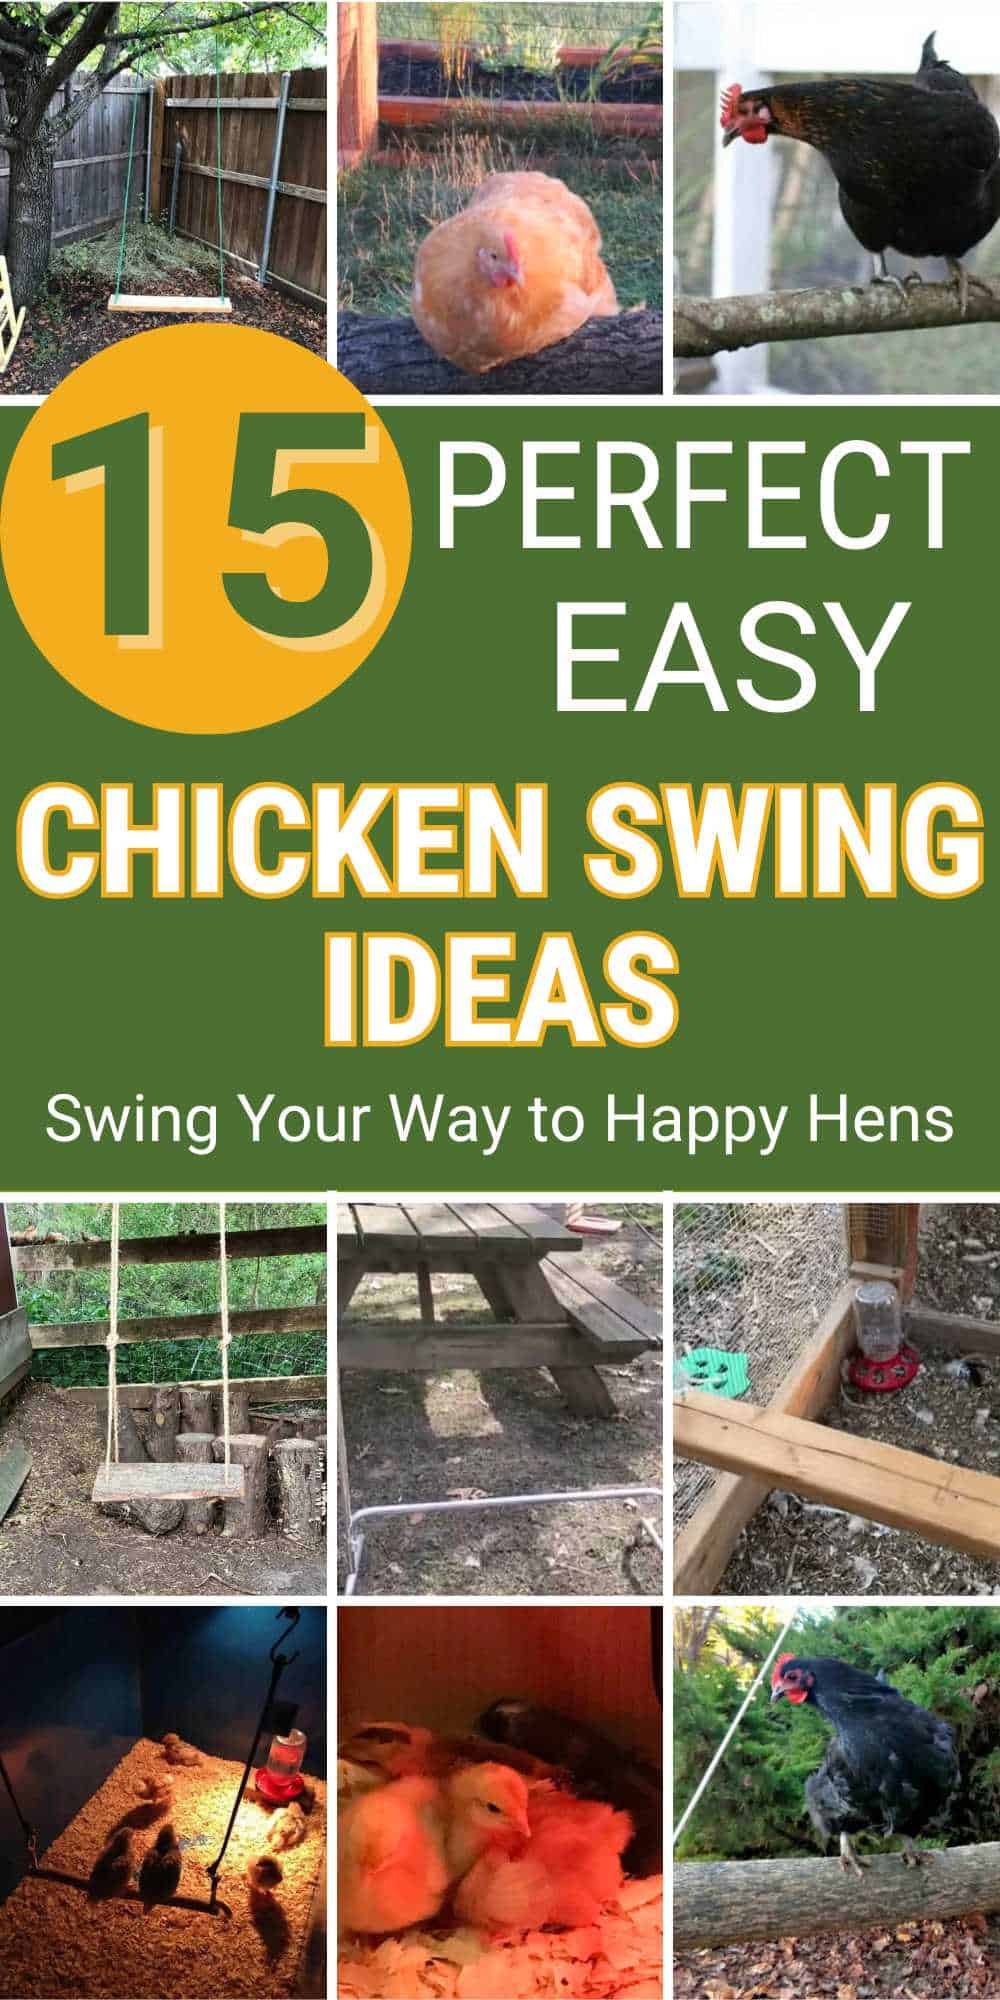 Chicken Swing Ideas